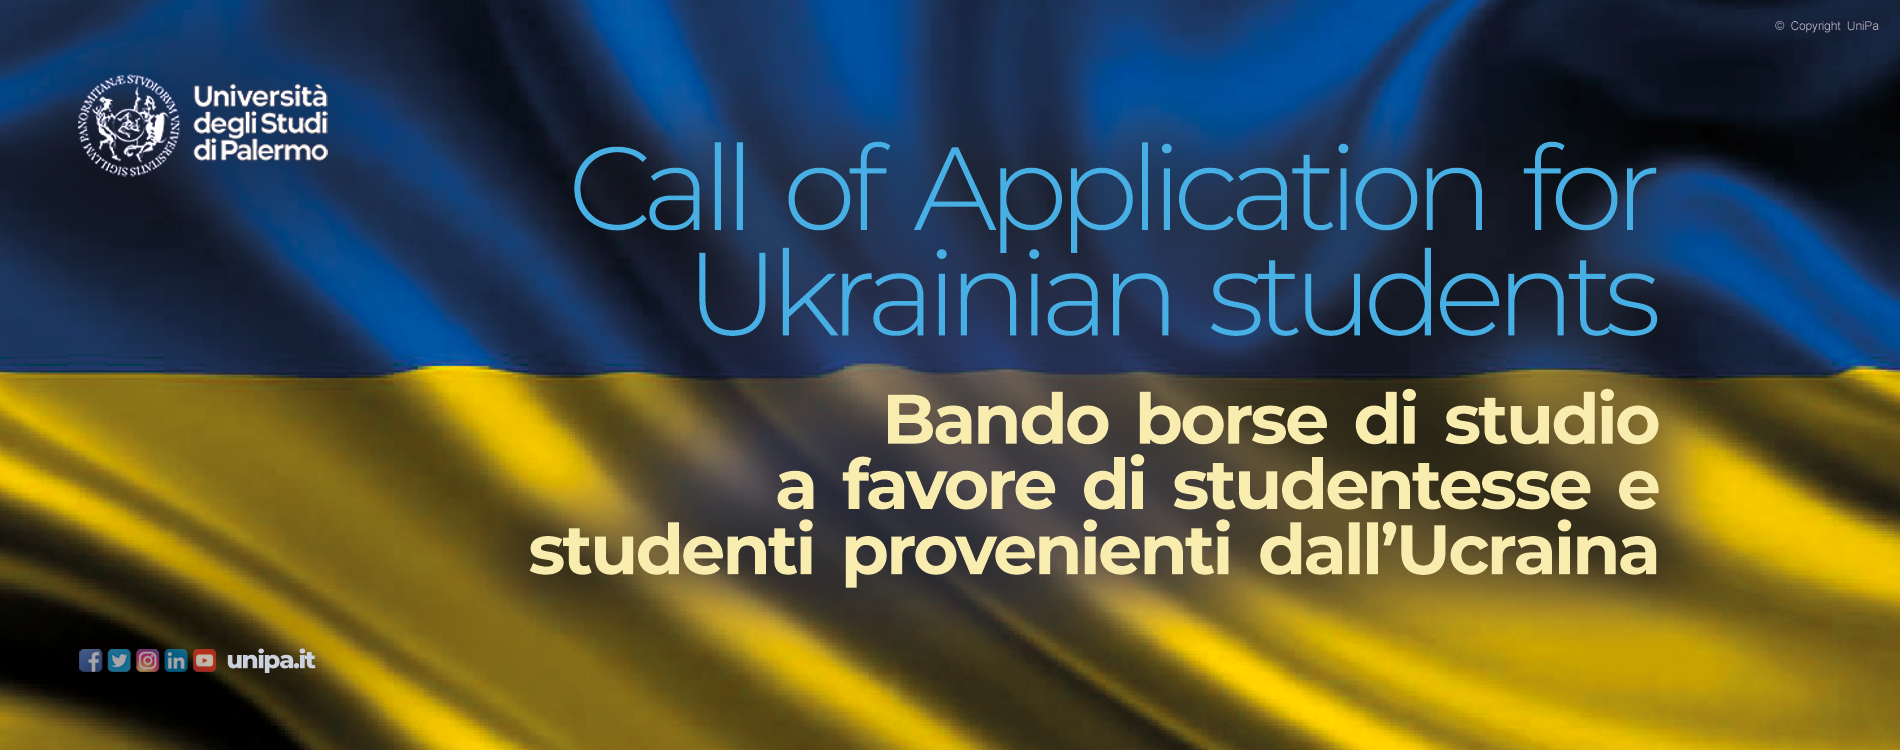 Call of Application for Ukrainian students - Bando n. 16 borse di studio a favore di studentesse e studenti provenienti dall’Ucraina